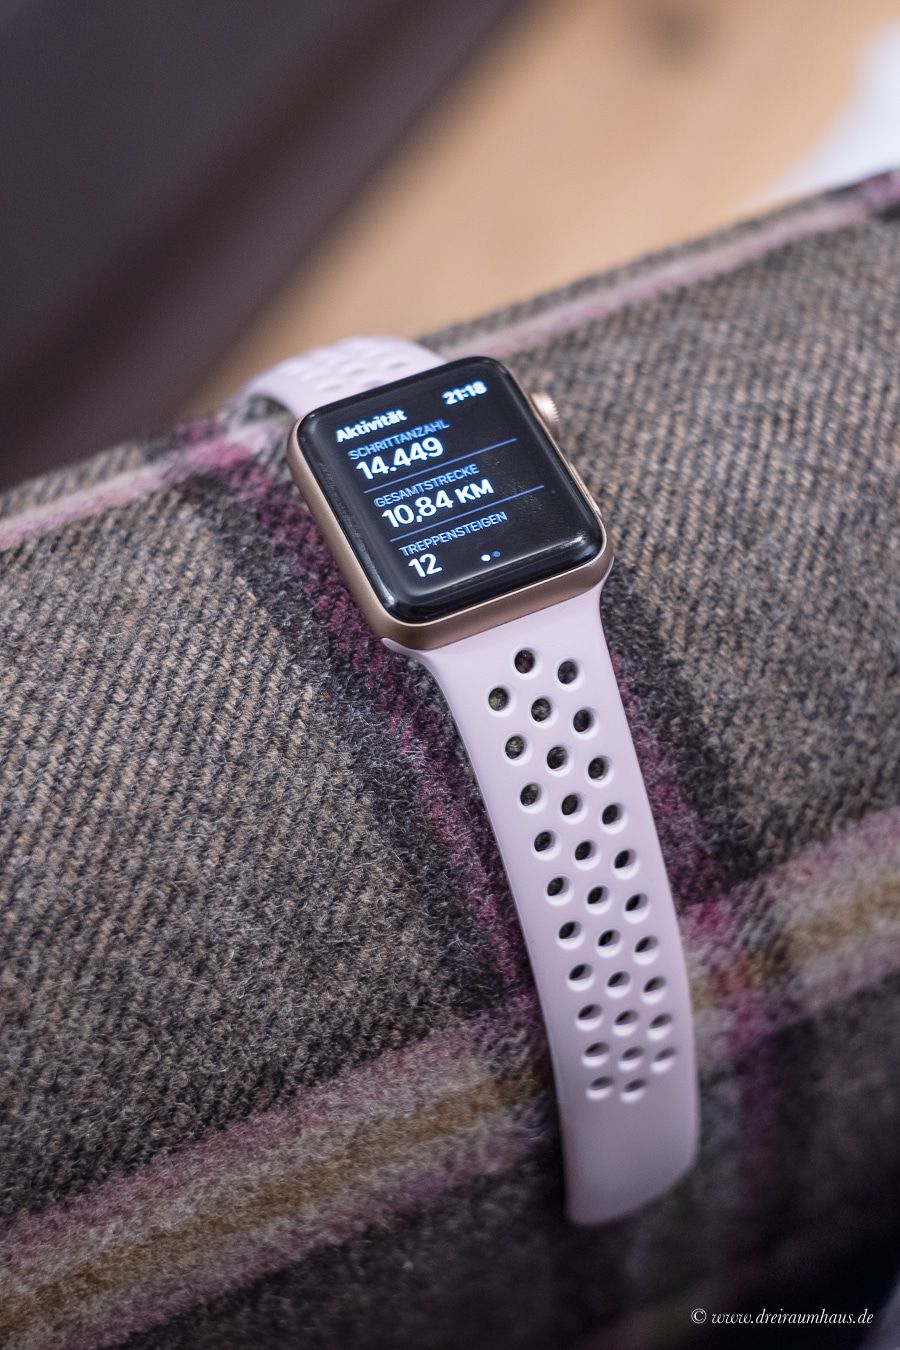 Heute geht es um Technik fÃ¼r Frauen in meiner Blogreihe #MeineTippsfÃ¼rFrauen - Macht die Apple Watch wirklich Sinn? Ist die Smartwatch nur Lifestyle?